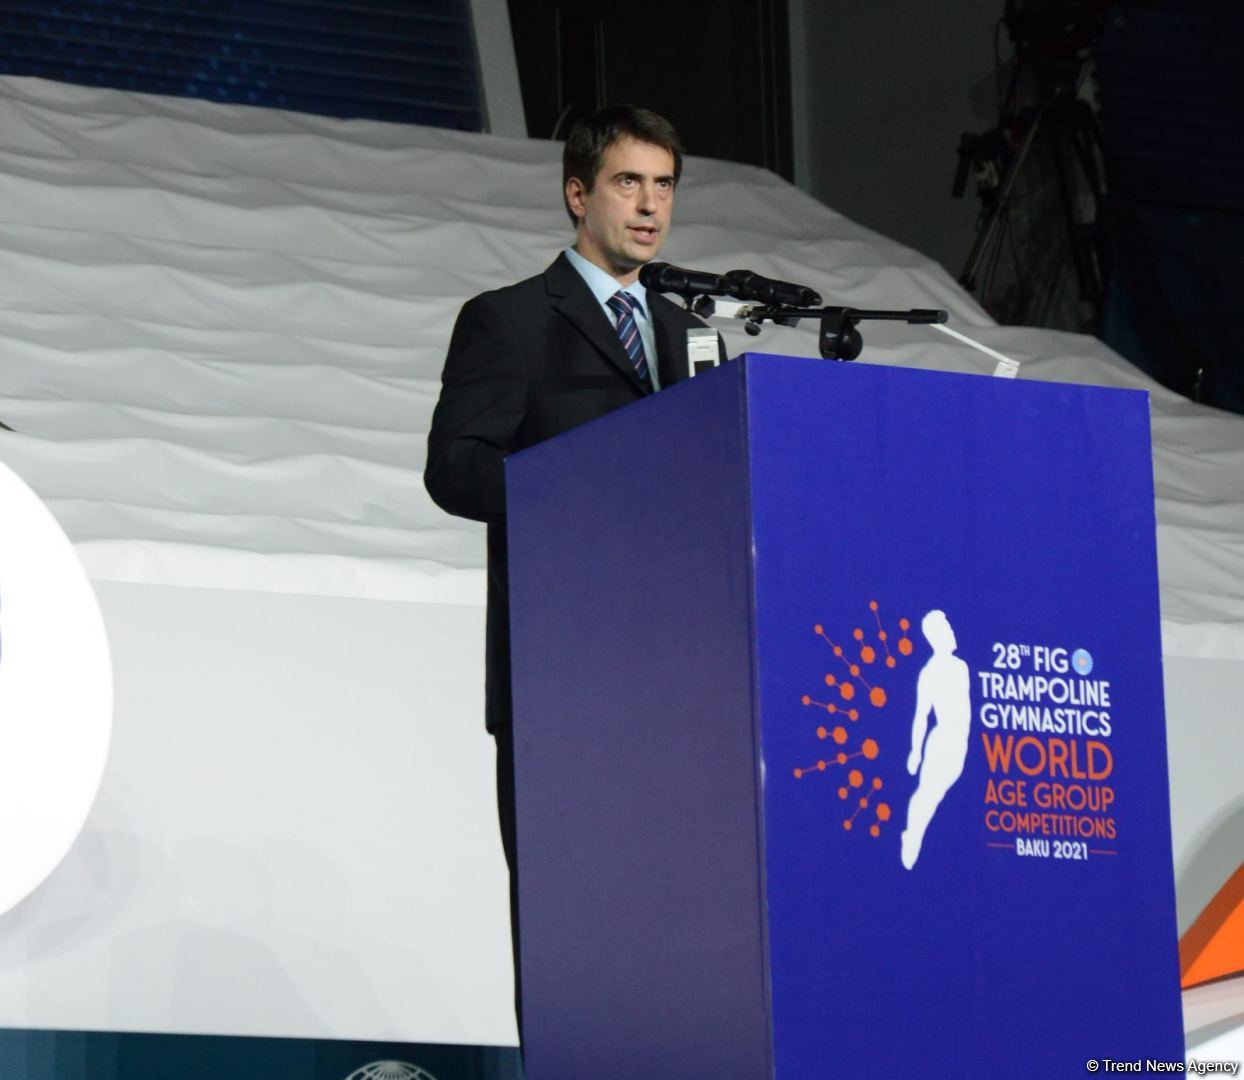 От имени Международной федерации гимнастики выражаю благодарность за организацию соревнований в Баку - первый вице-президент Технического комитета по батутной гимнастике FIG